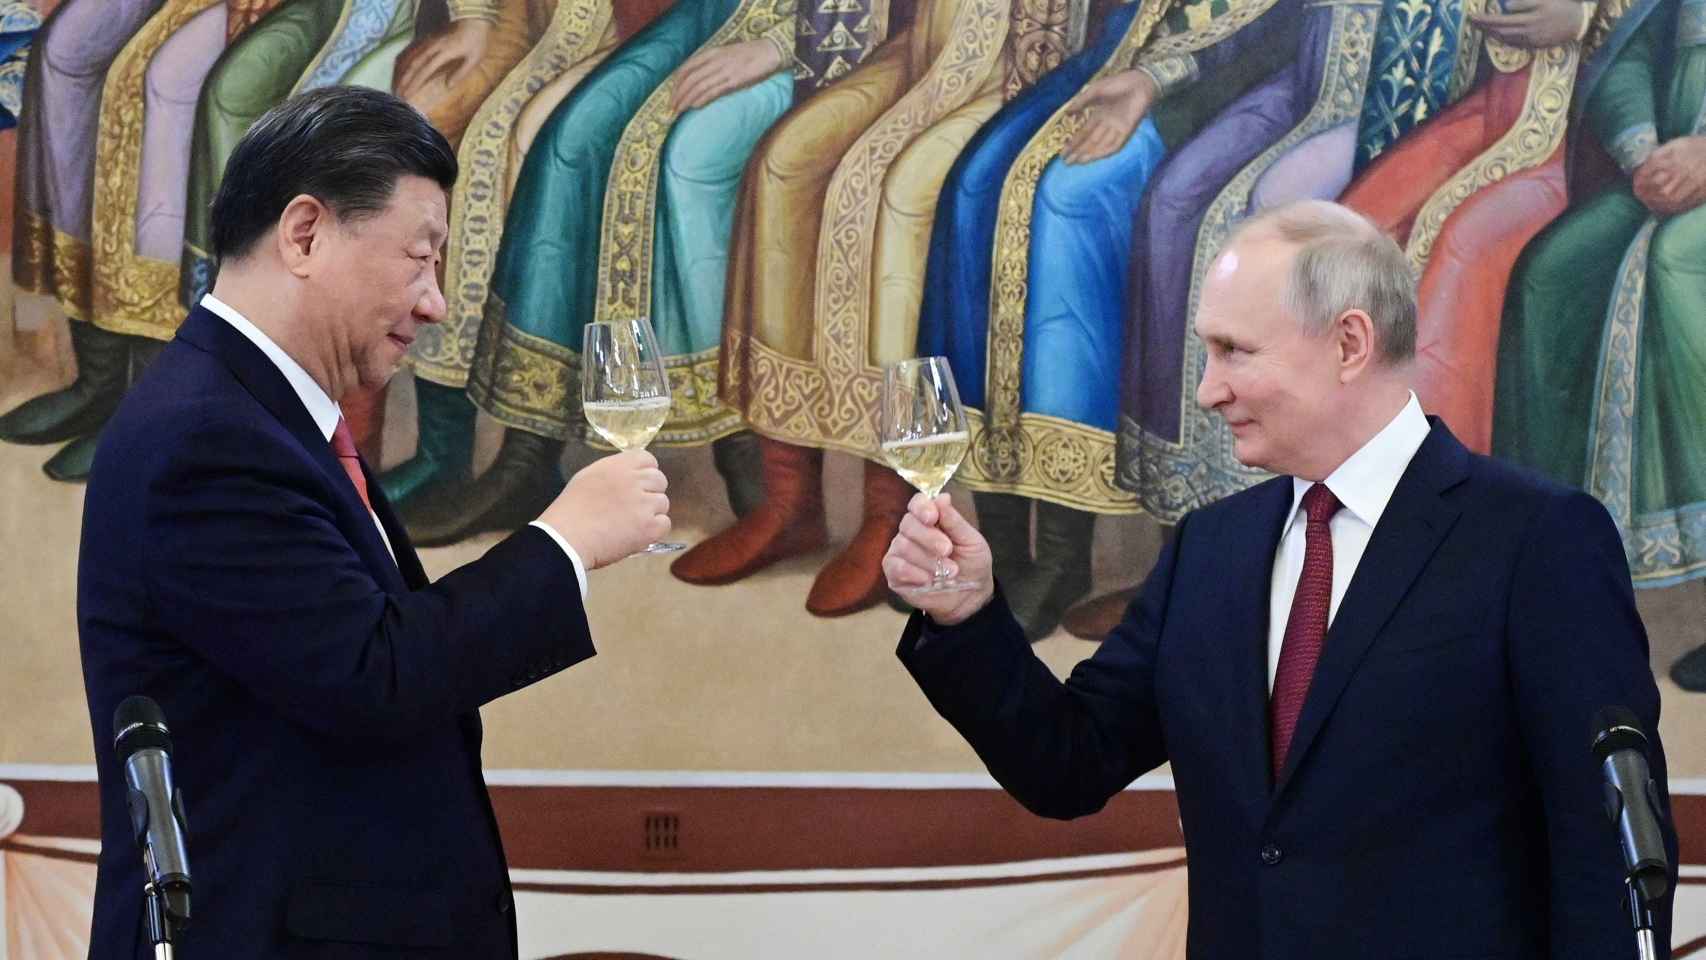 El presidente ruso Vladimir Putin y el presidente chino Xi Jinping asisten a una recepción en el Kremlin en Moscú, Rusia, el 21 de marzo de 2023.